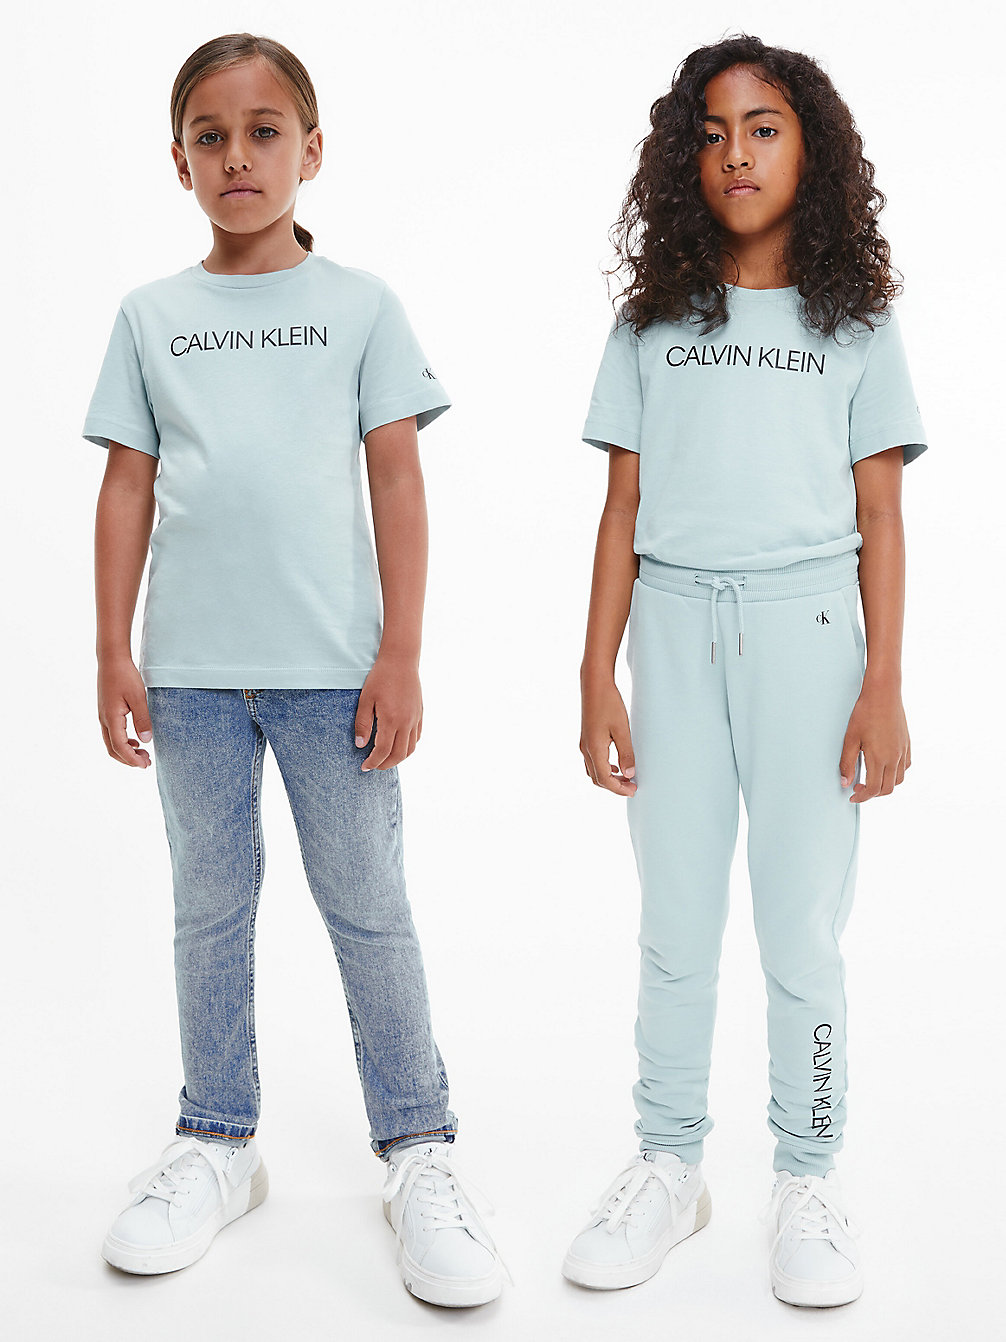 MUTED AQUA Unisex Organic Cotton Logo T-Shirt undefined kids unisex Calvin Klein